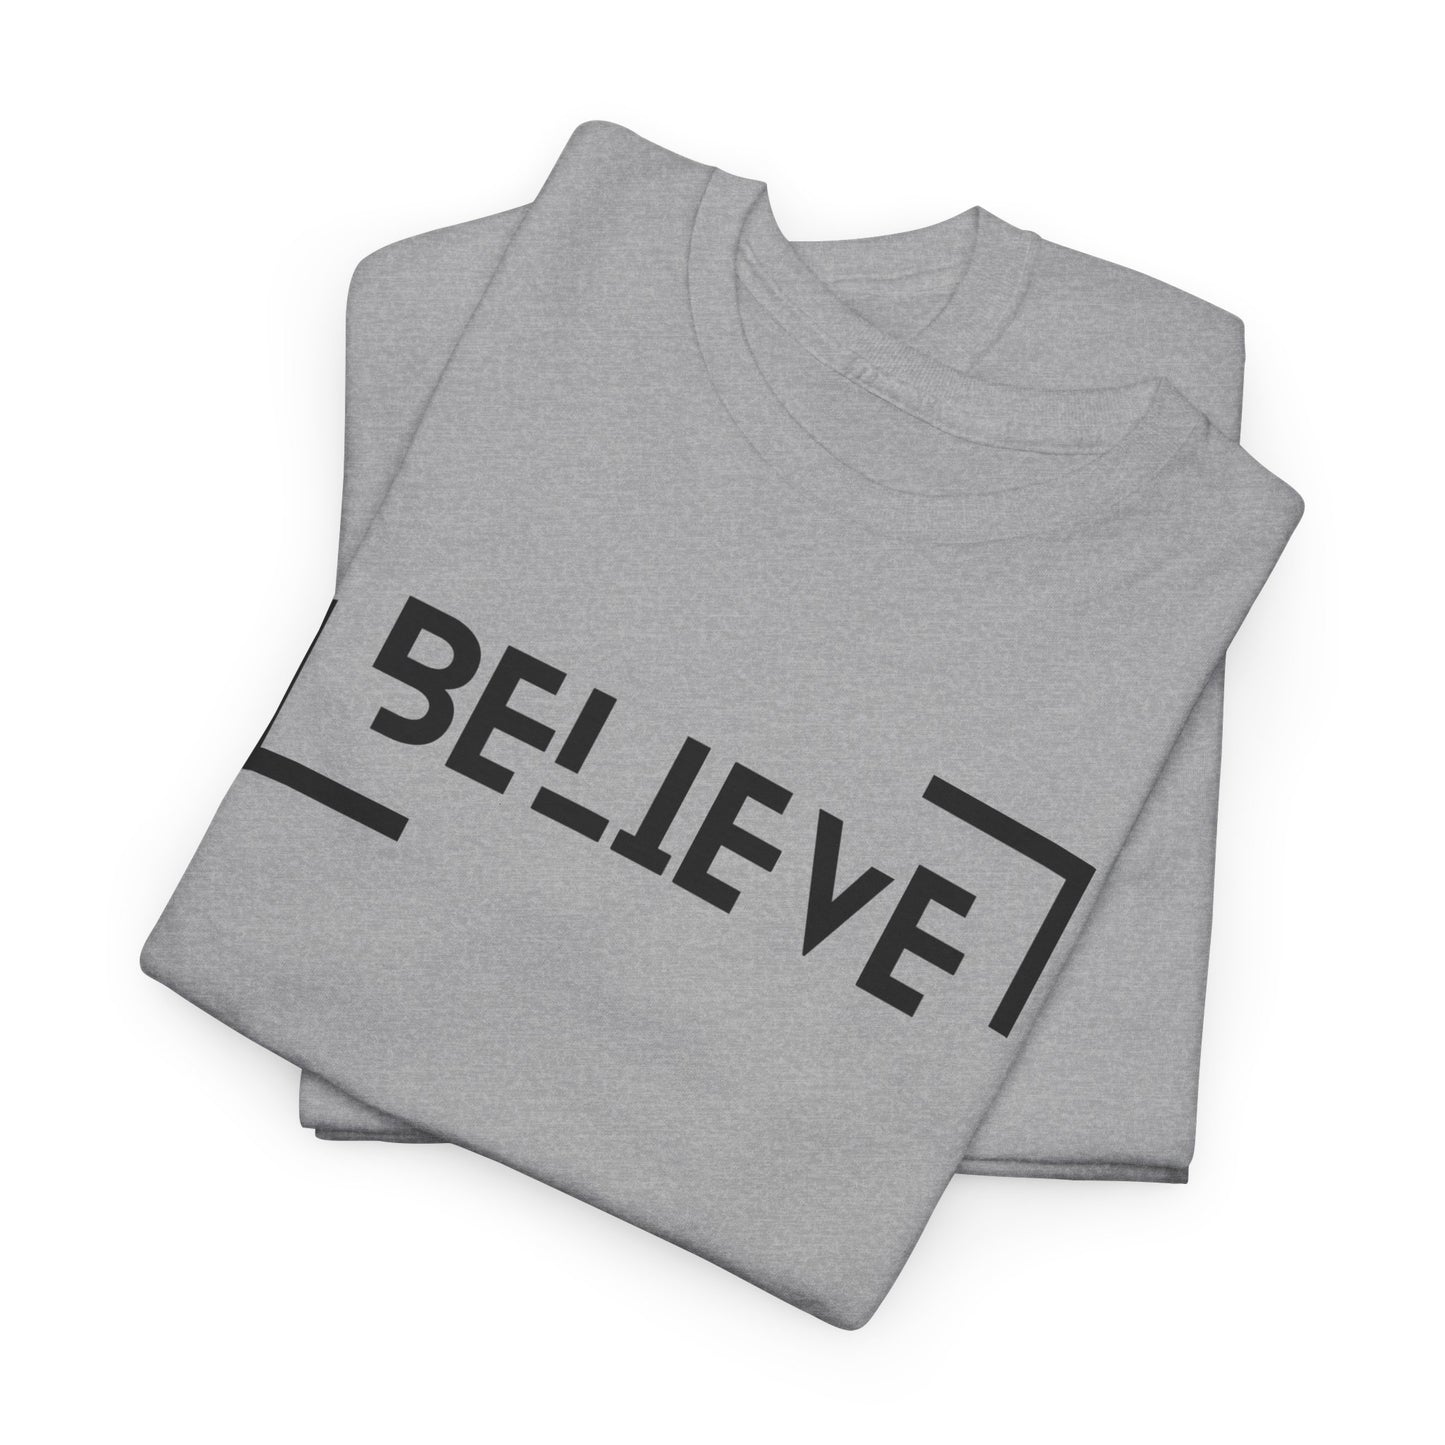 Believe t-shirt